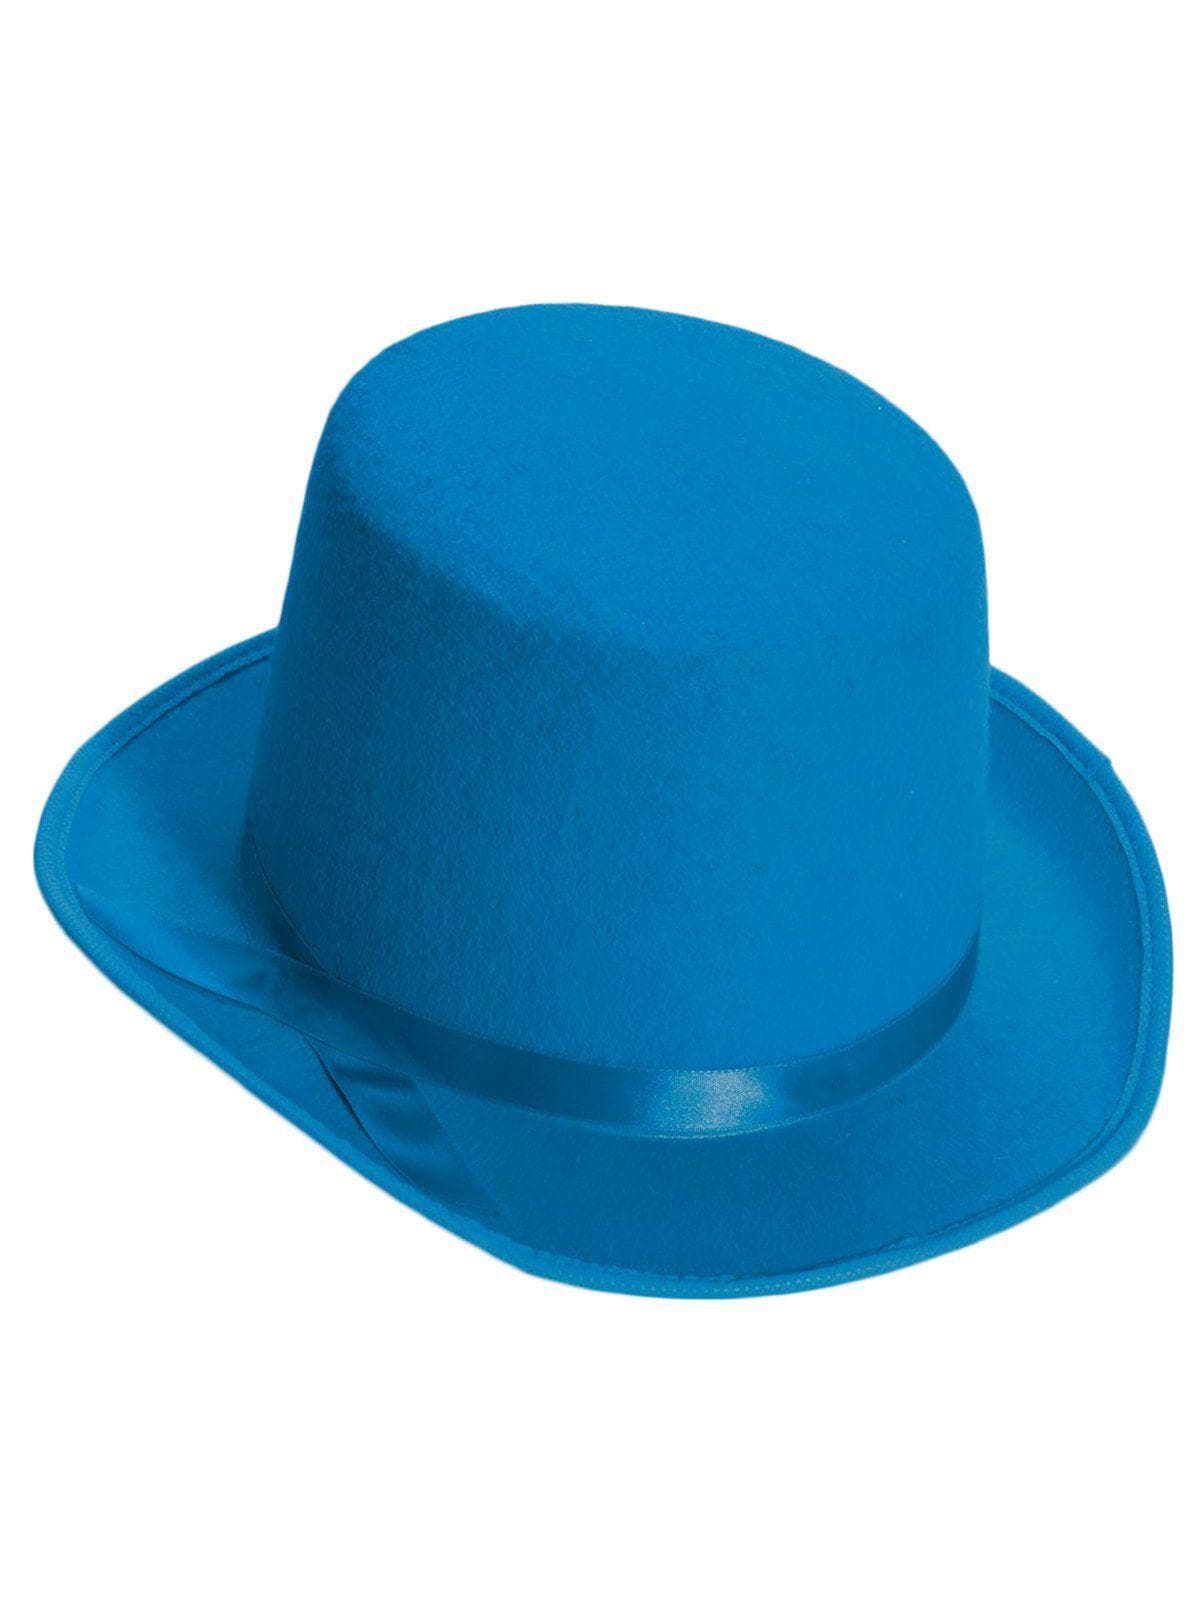 Blue Top Hat - costumes.com